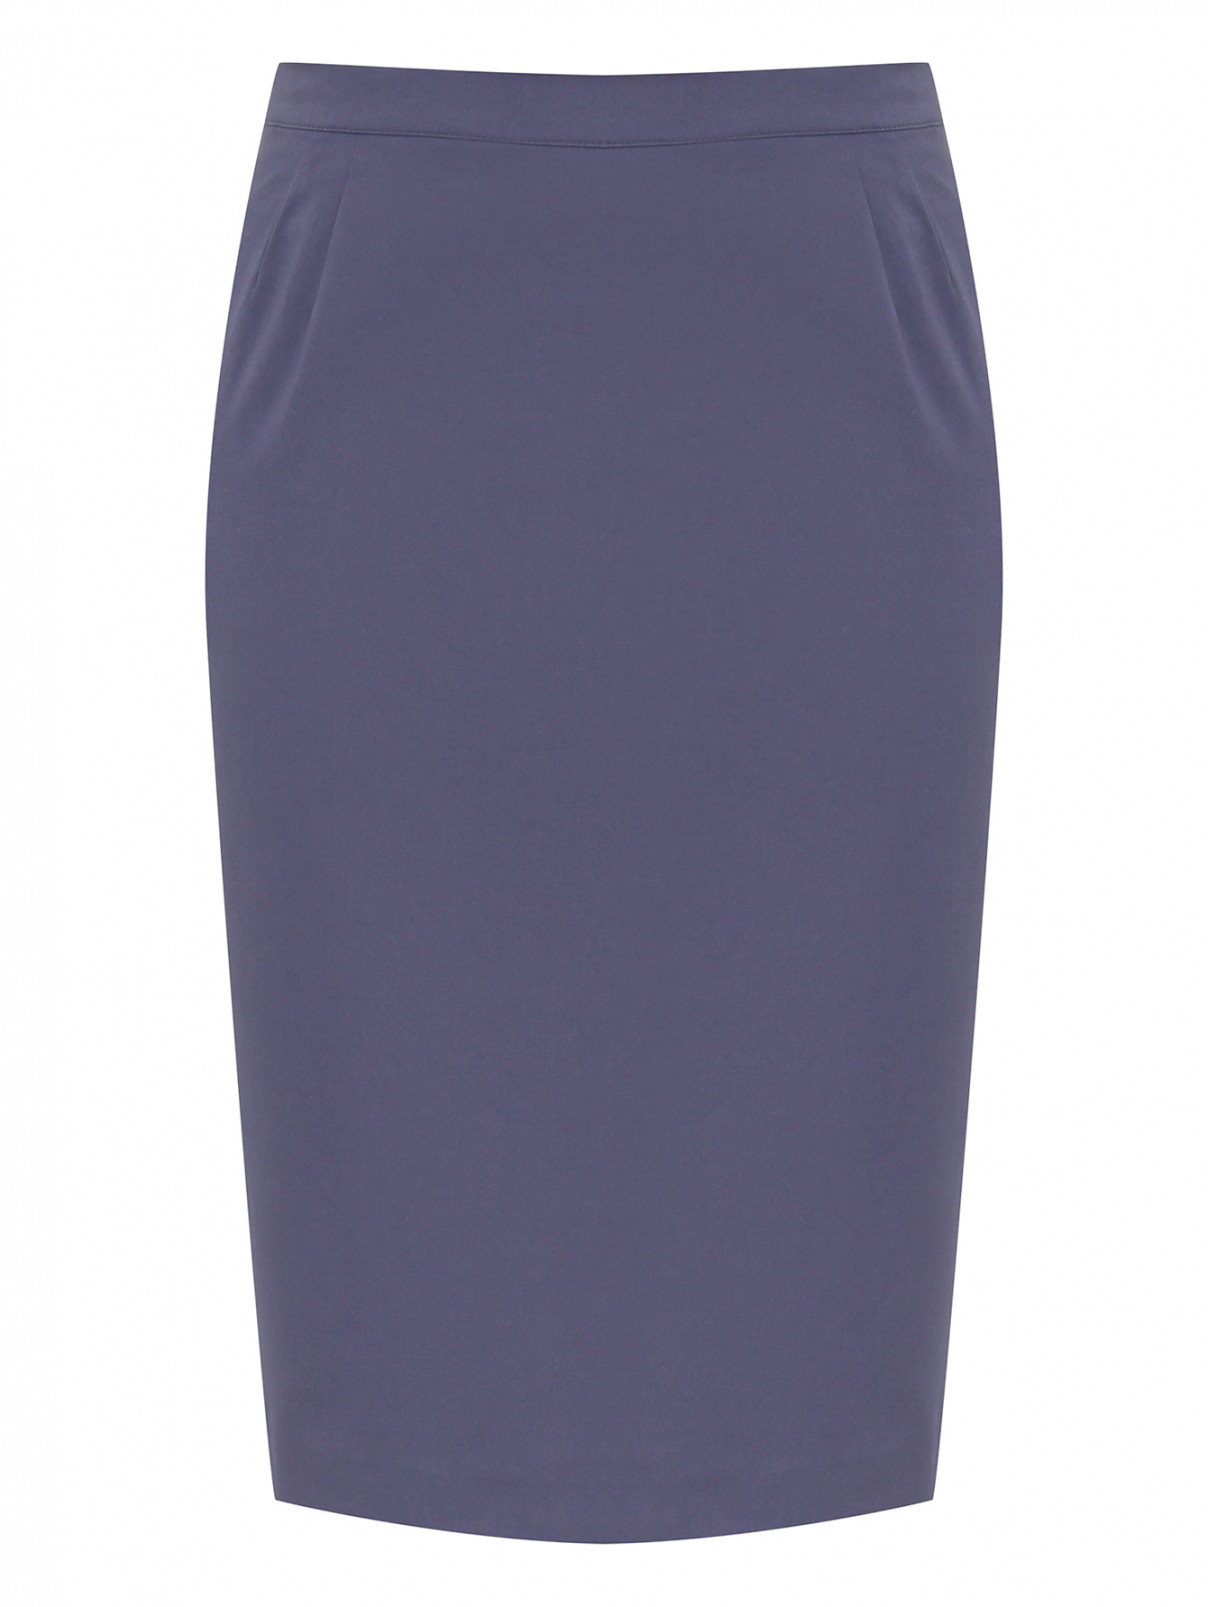 Однотонная юбка из хлопка Persona by Marina Rinaldi  –  Общий вид  – Цвет:  Синий